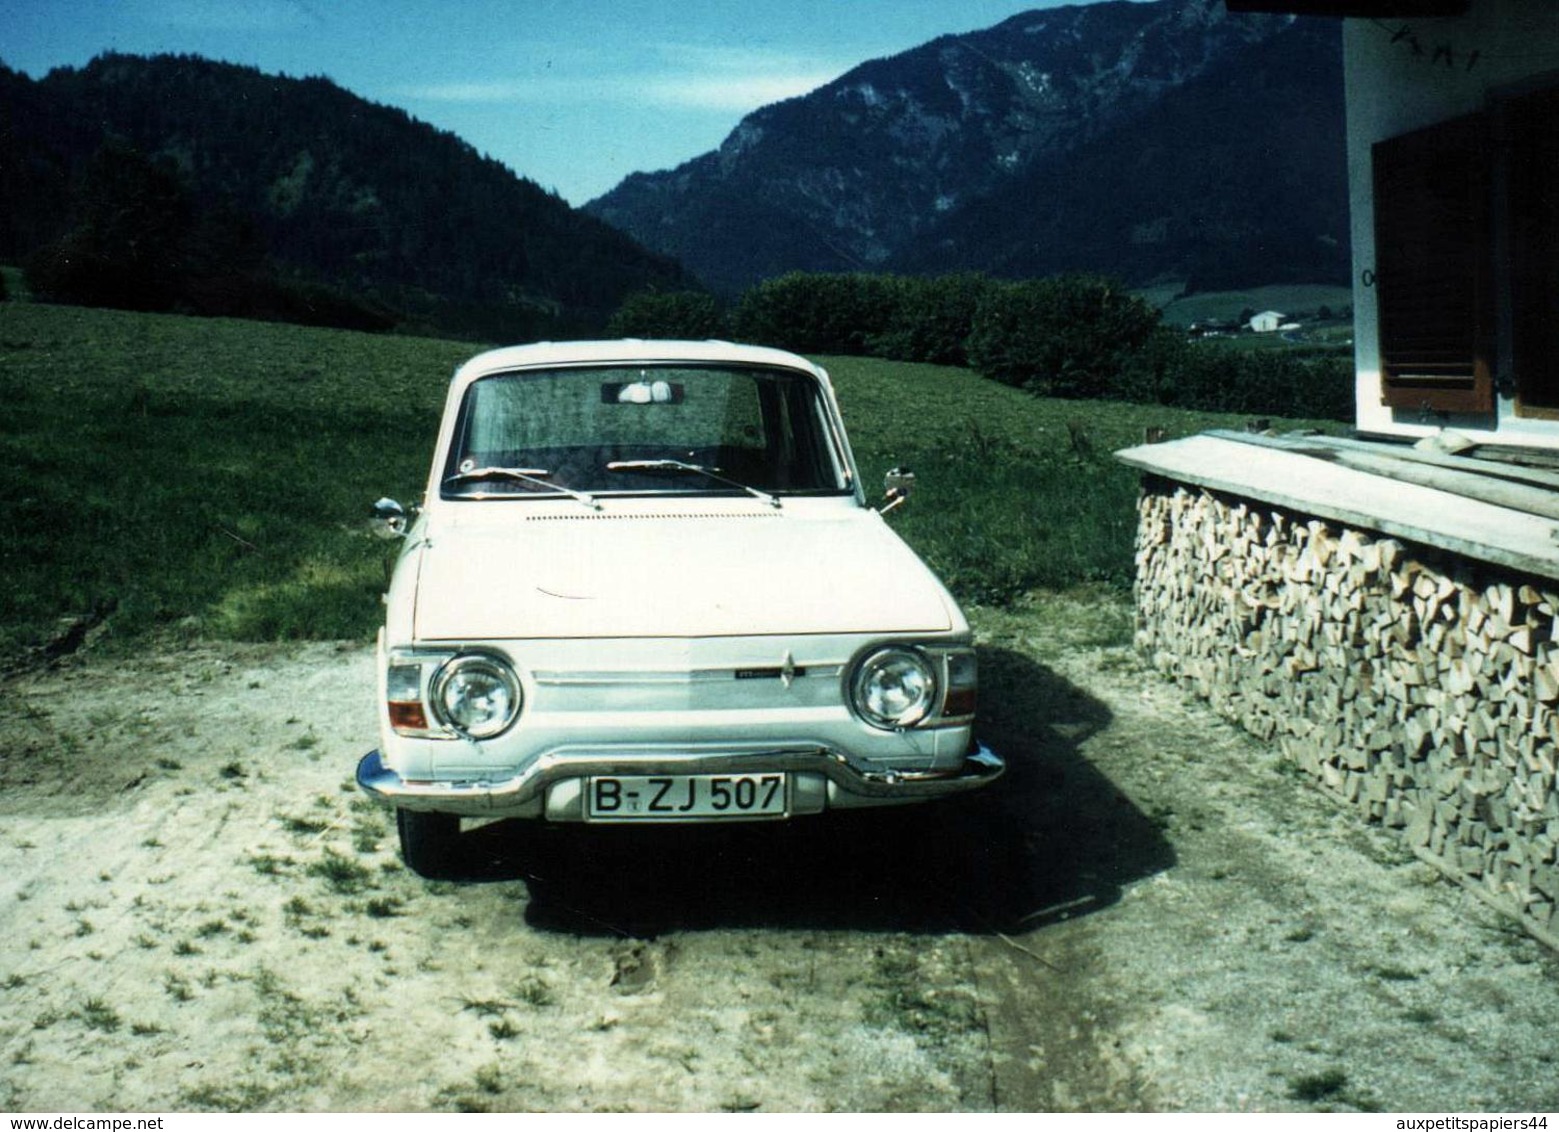 Photo Couleur Originale Renault 10 Major Blanche (1965-1971) - Automobiles